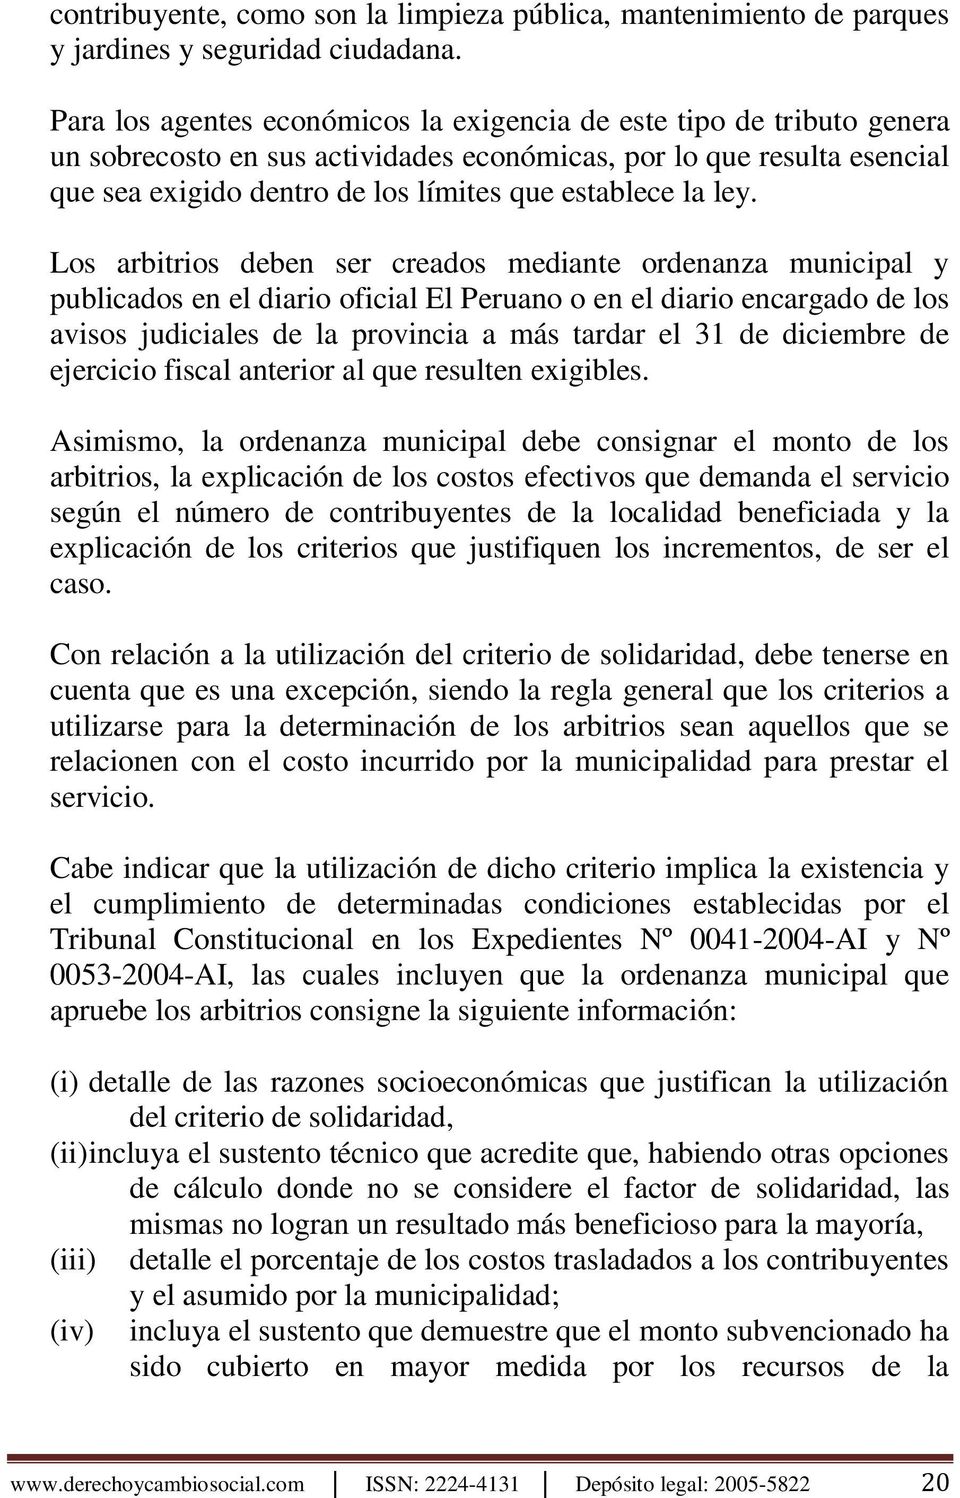 ley. Los arbitrios deben ser creados mediante ordenanza municipal y publicados en el diario oficial El Peruano o en el diario encargado de los avisos judiciales de la provincia a más tardar el 31 de